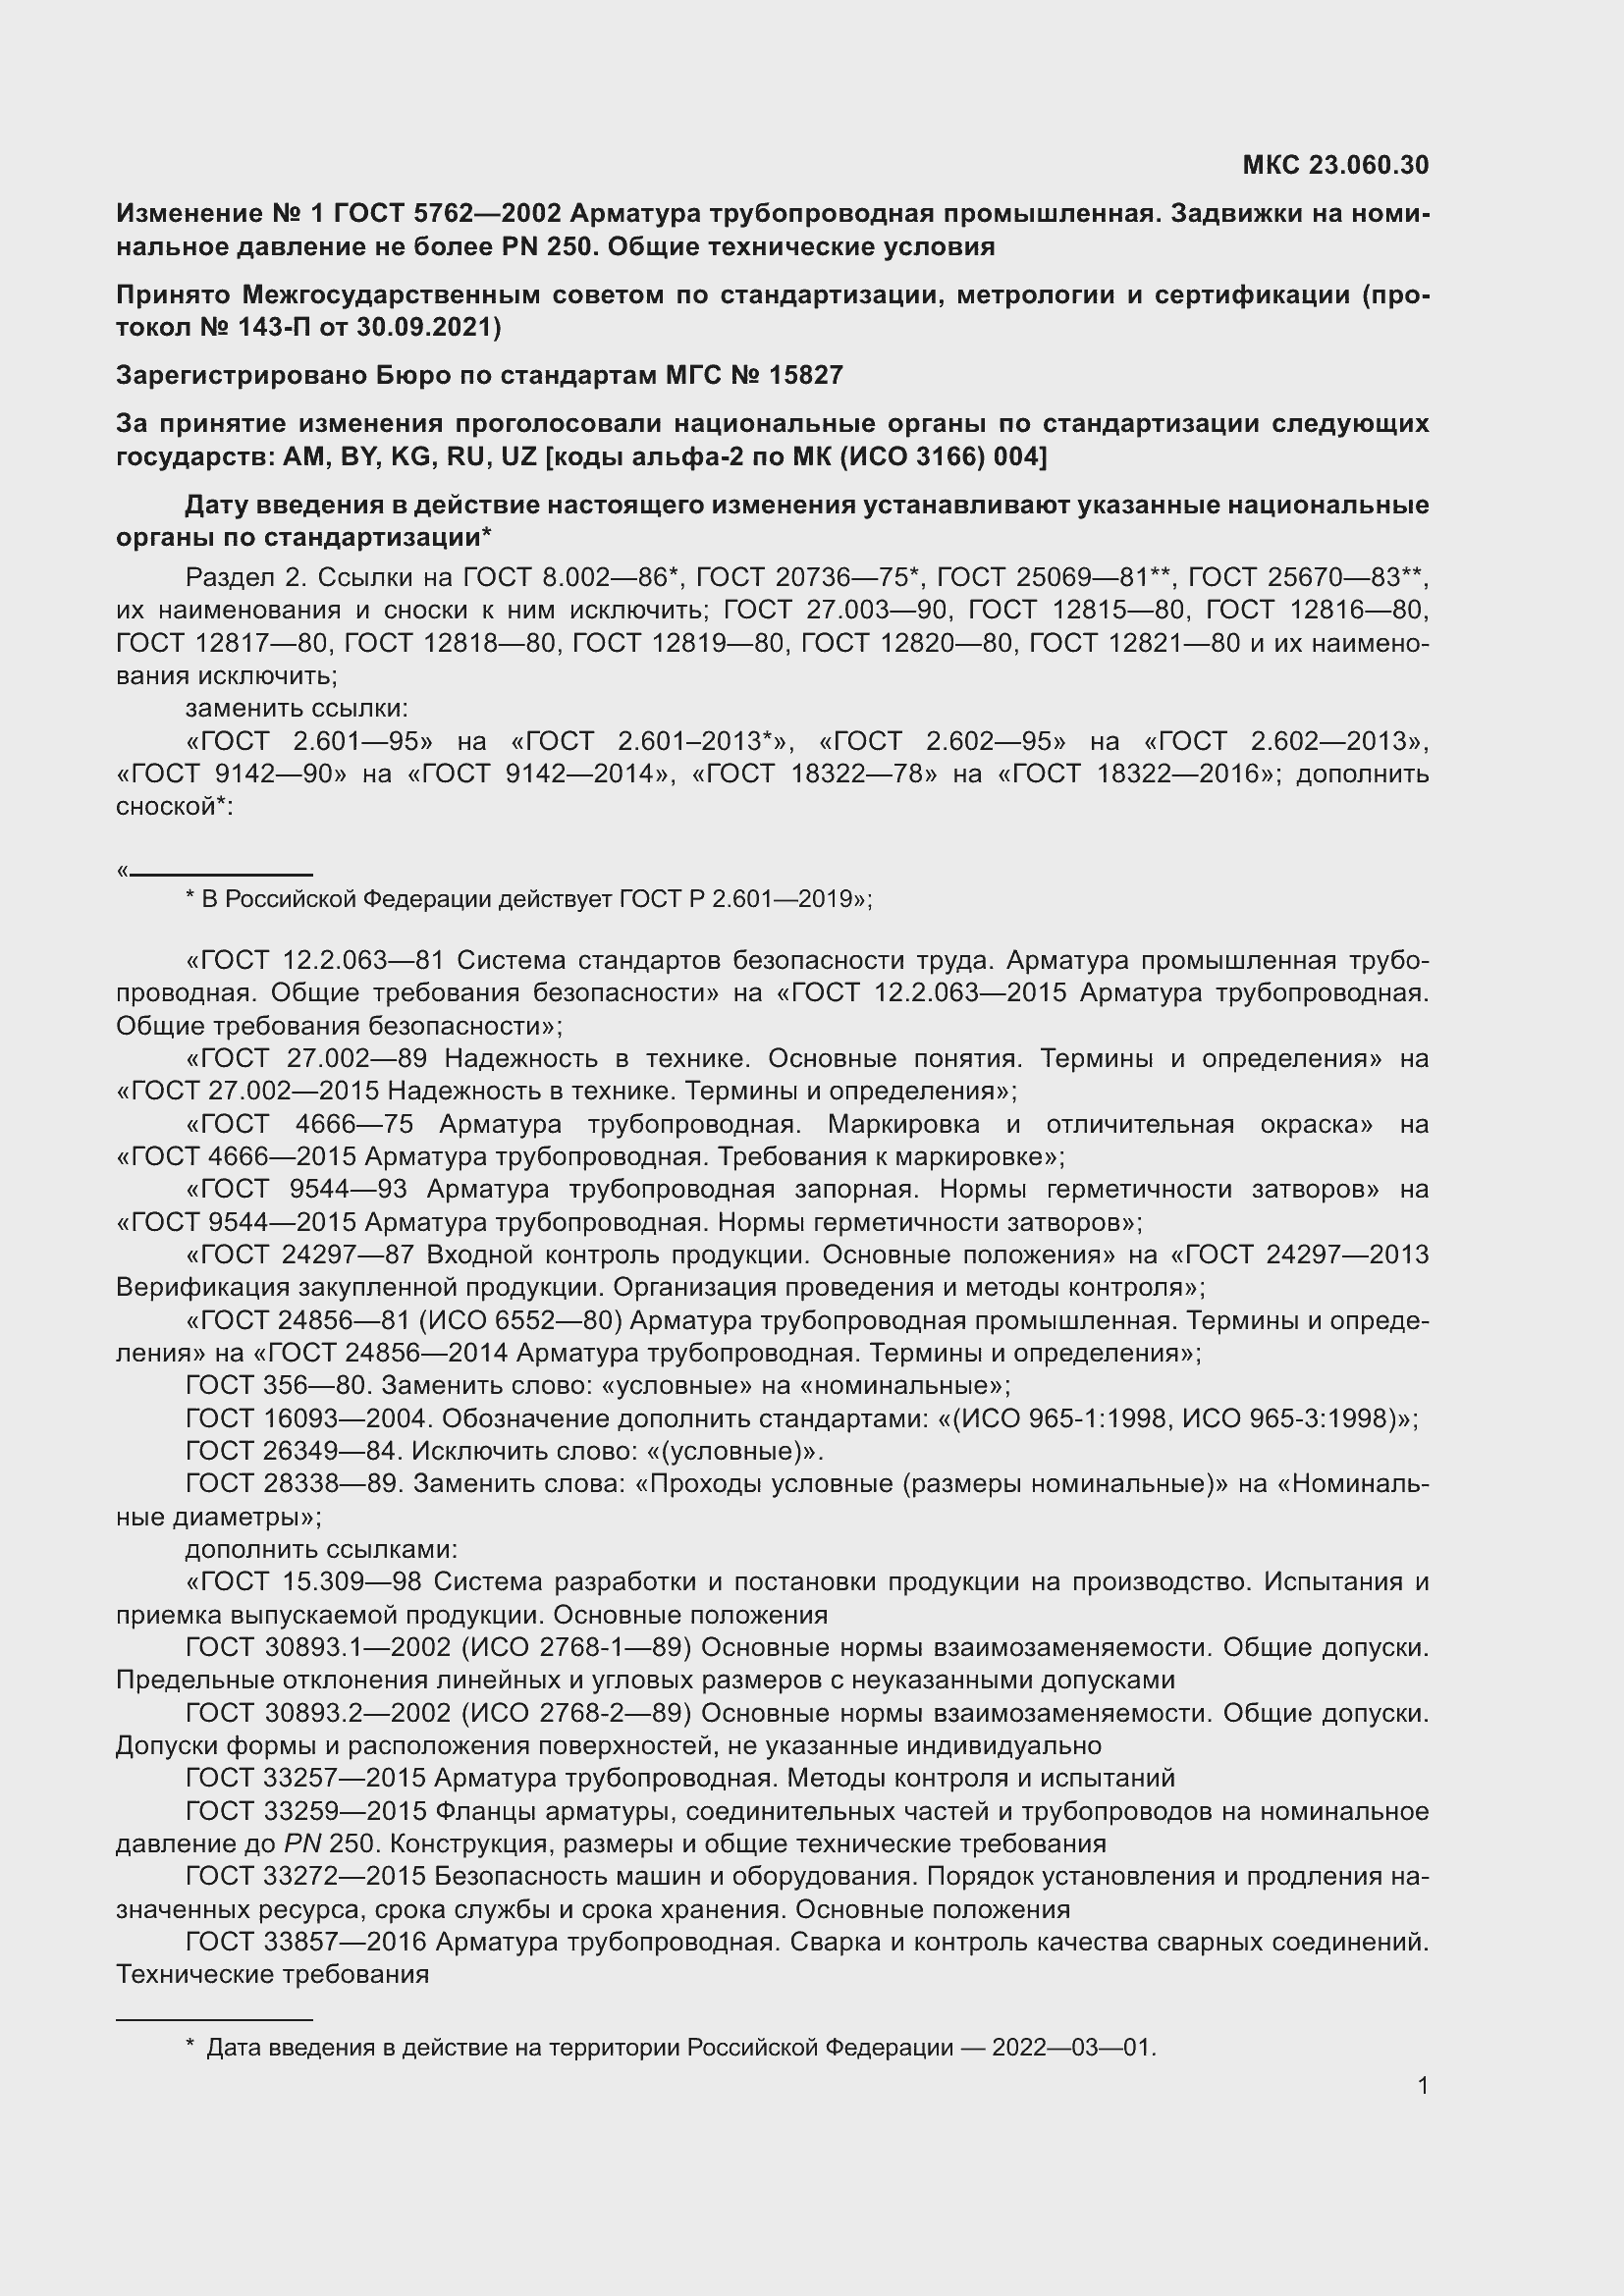 Изменение №1 к ГОСТ 5762-2002